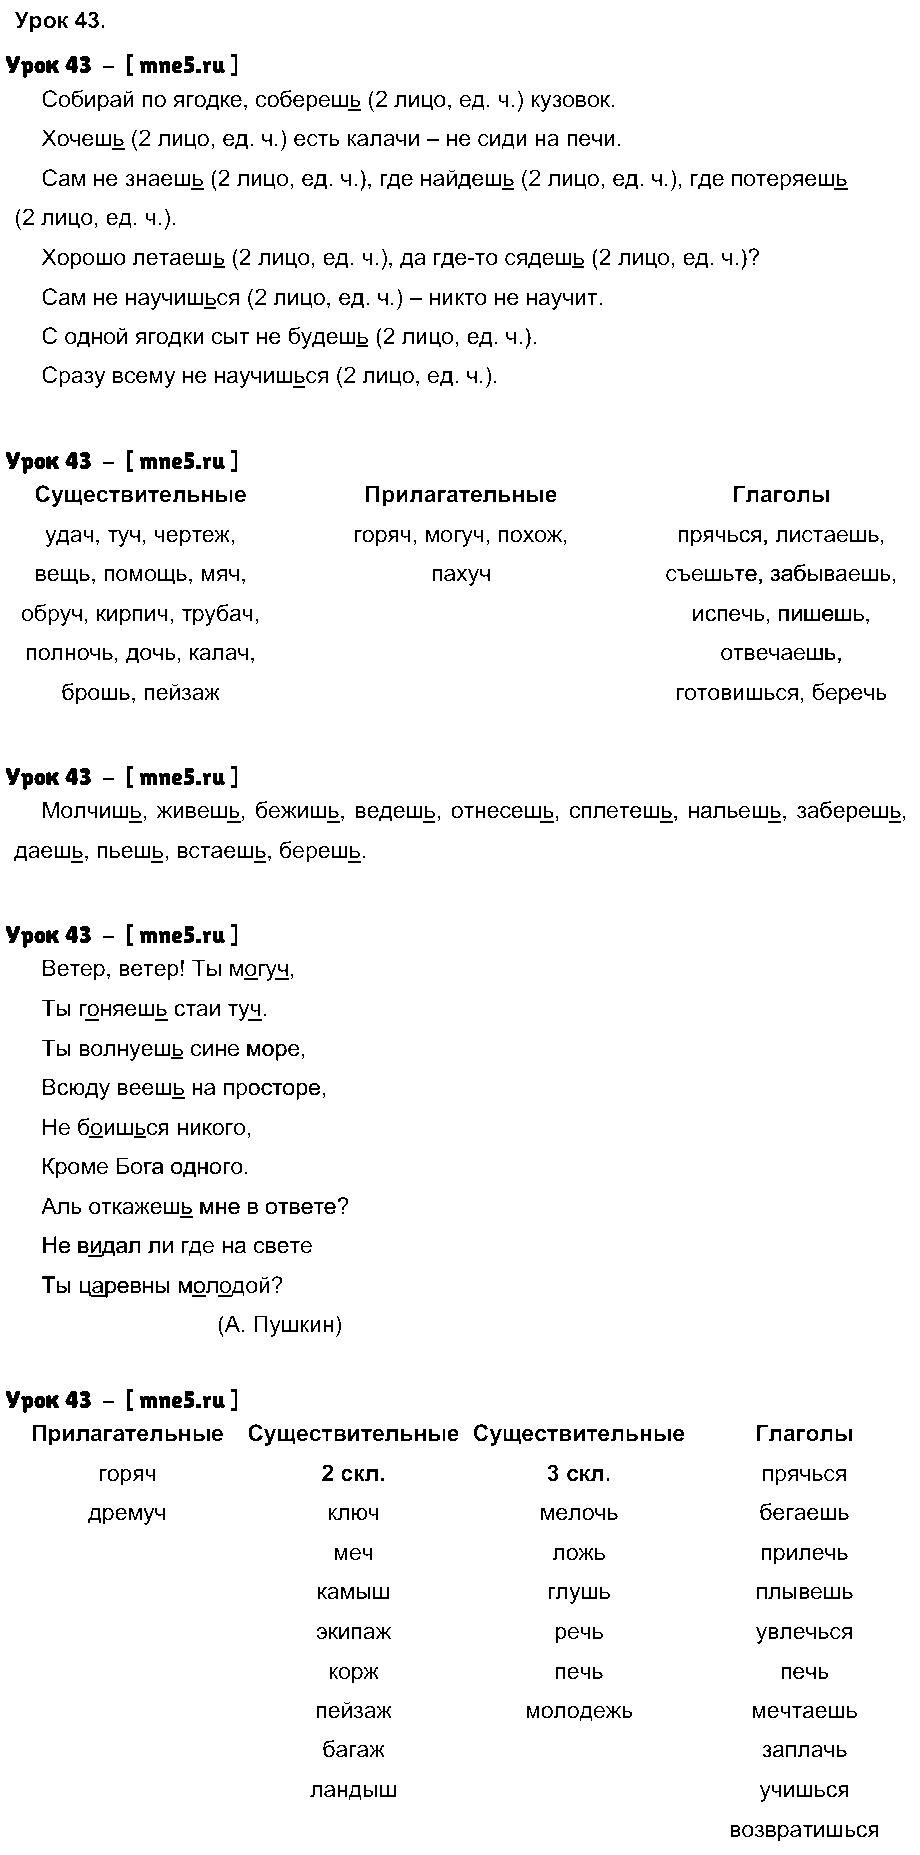 ГДЗ Русский язык 4 класс - Урок 43